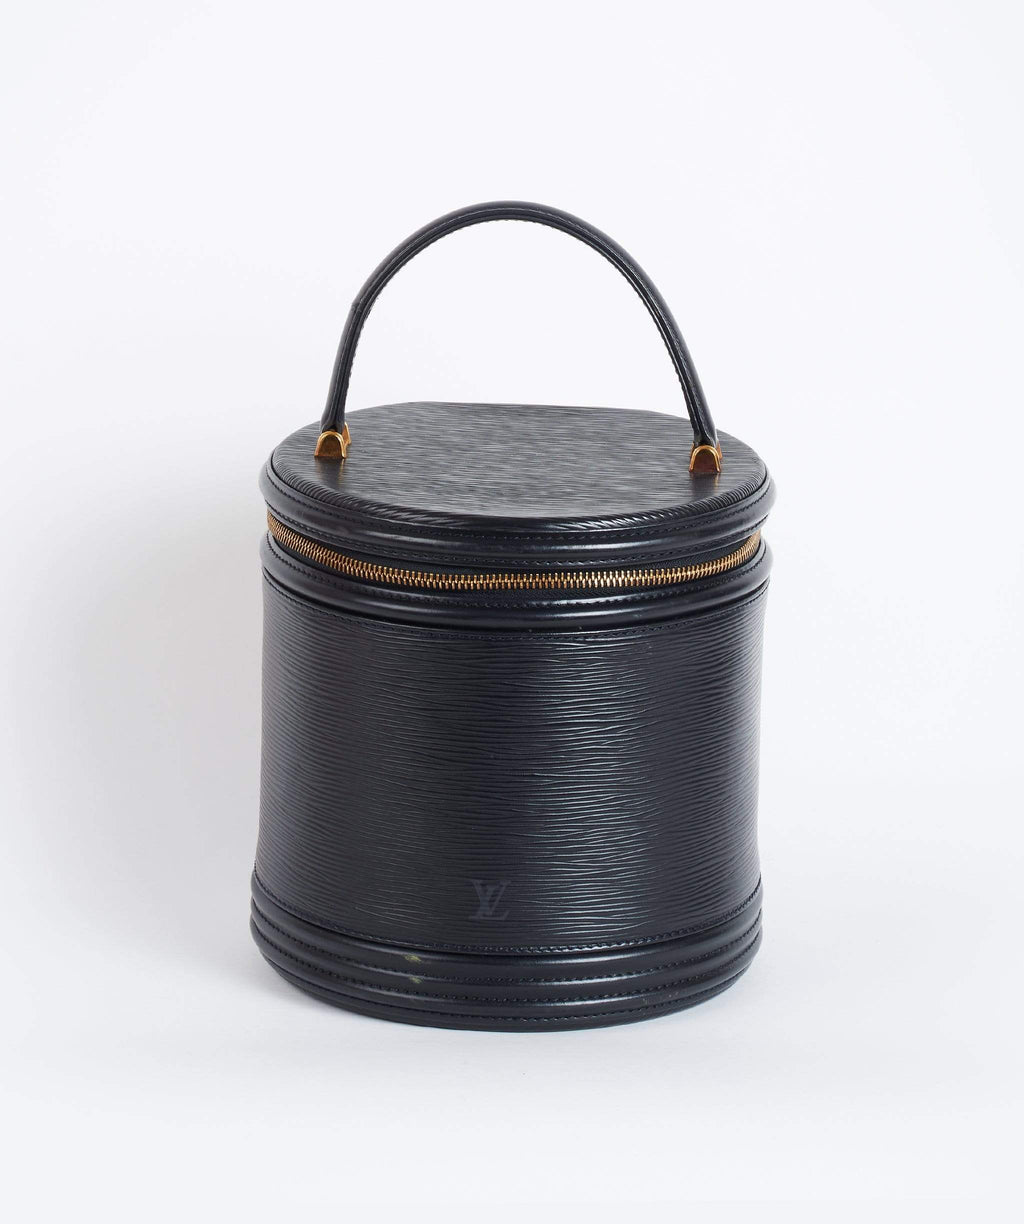 Authentic LOUIS VUITTON Black Epi Leather Saint Jacques PM Tote Bag  eBay